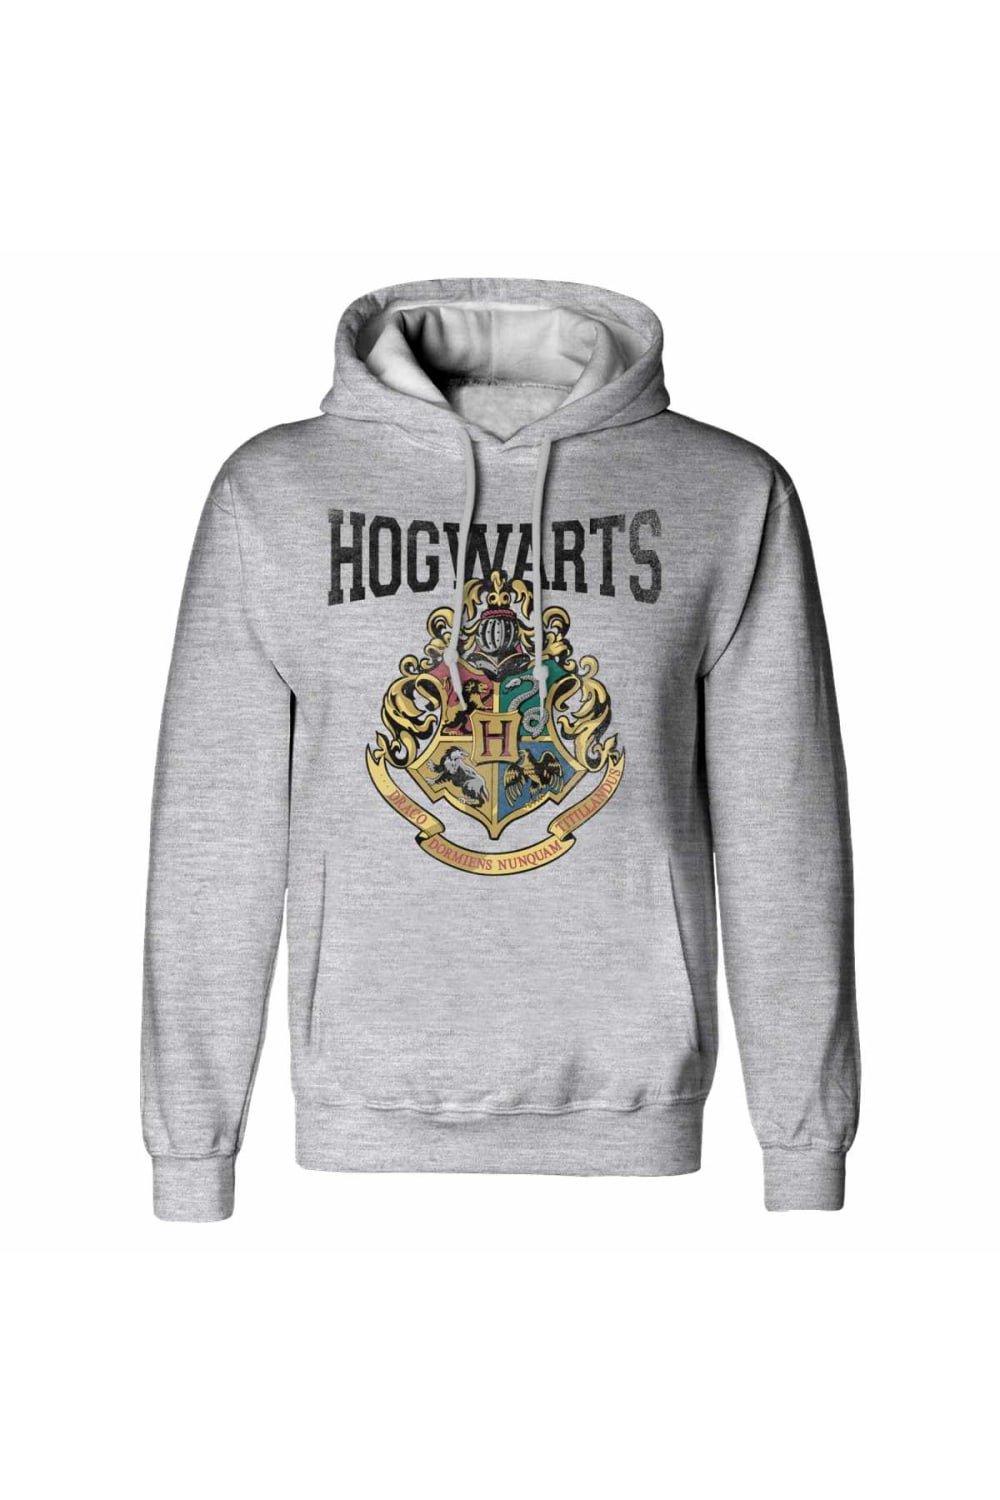 Hogwarts Crest Hoodie